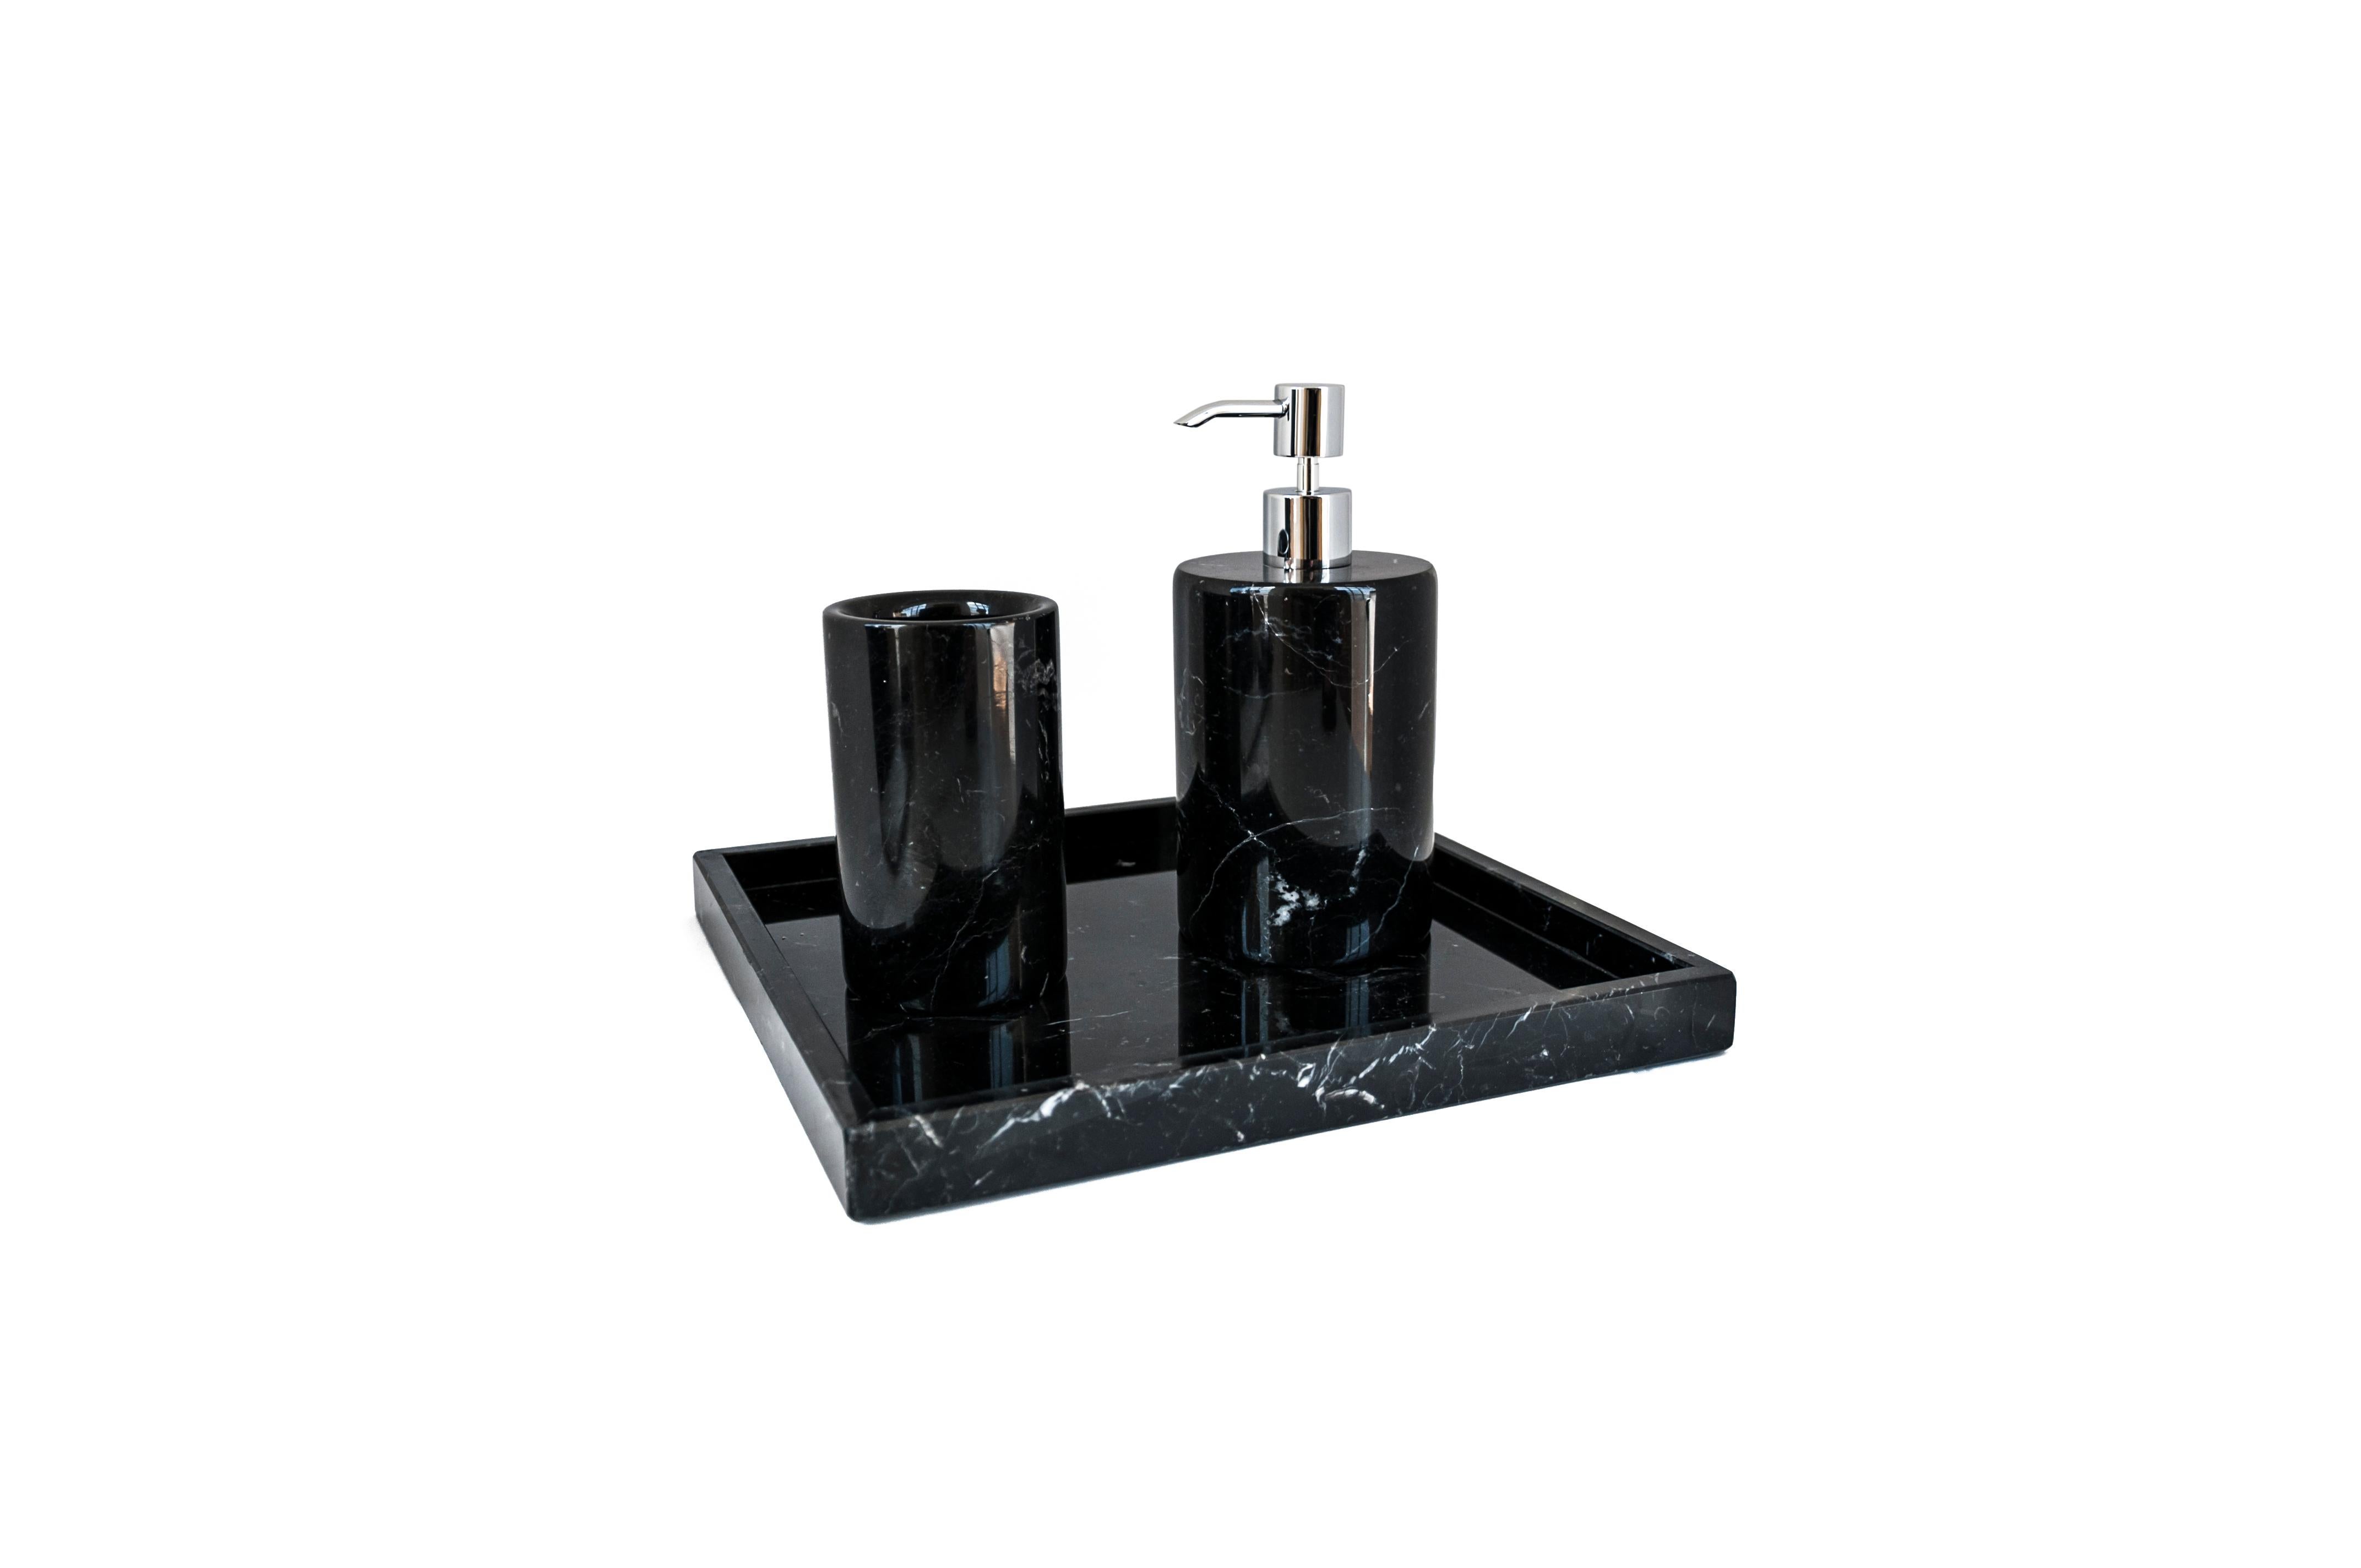 Ein Set für das Badezimmer aus schwarzem Marquina-Marmor, bestehend aus: Ein abgerundeter Seifenspender (Durchmesser 9 x 19,5 cm), ein abgerundeter Zahnbürstenhalter (Durchmesser 7 x 12 cm), ein Spa-Tablett (26,5 x 26,5 x 2 cm).
Jedes Stück ist ein